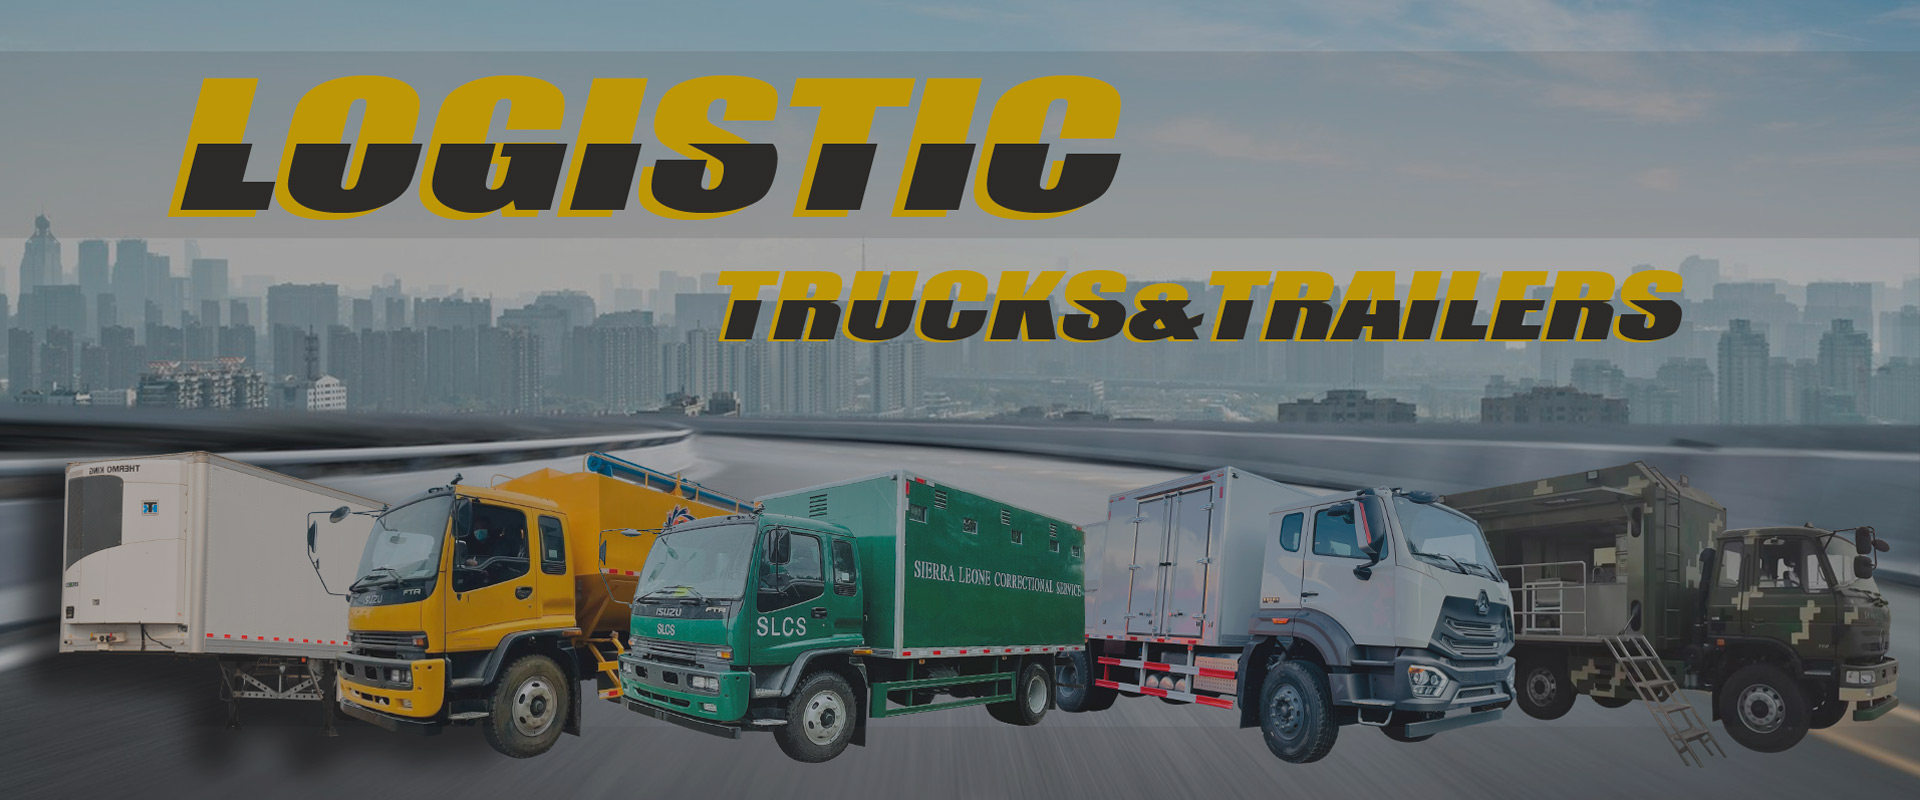 Logistic Trucks & Trailers